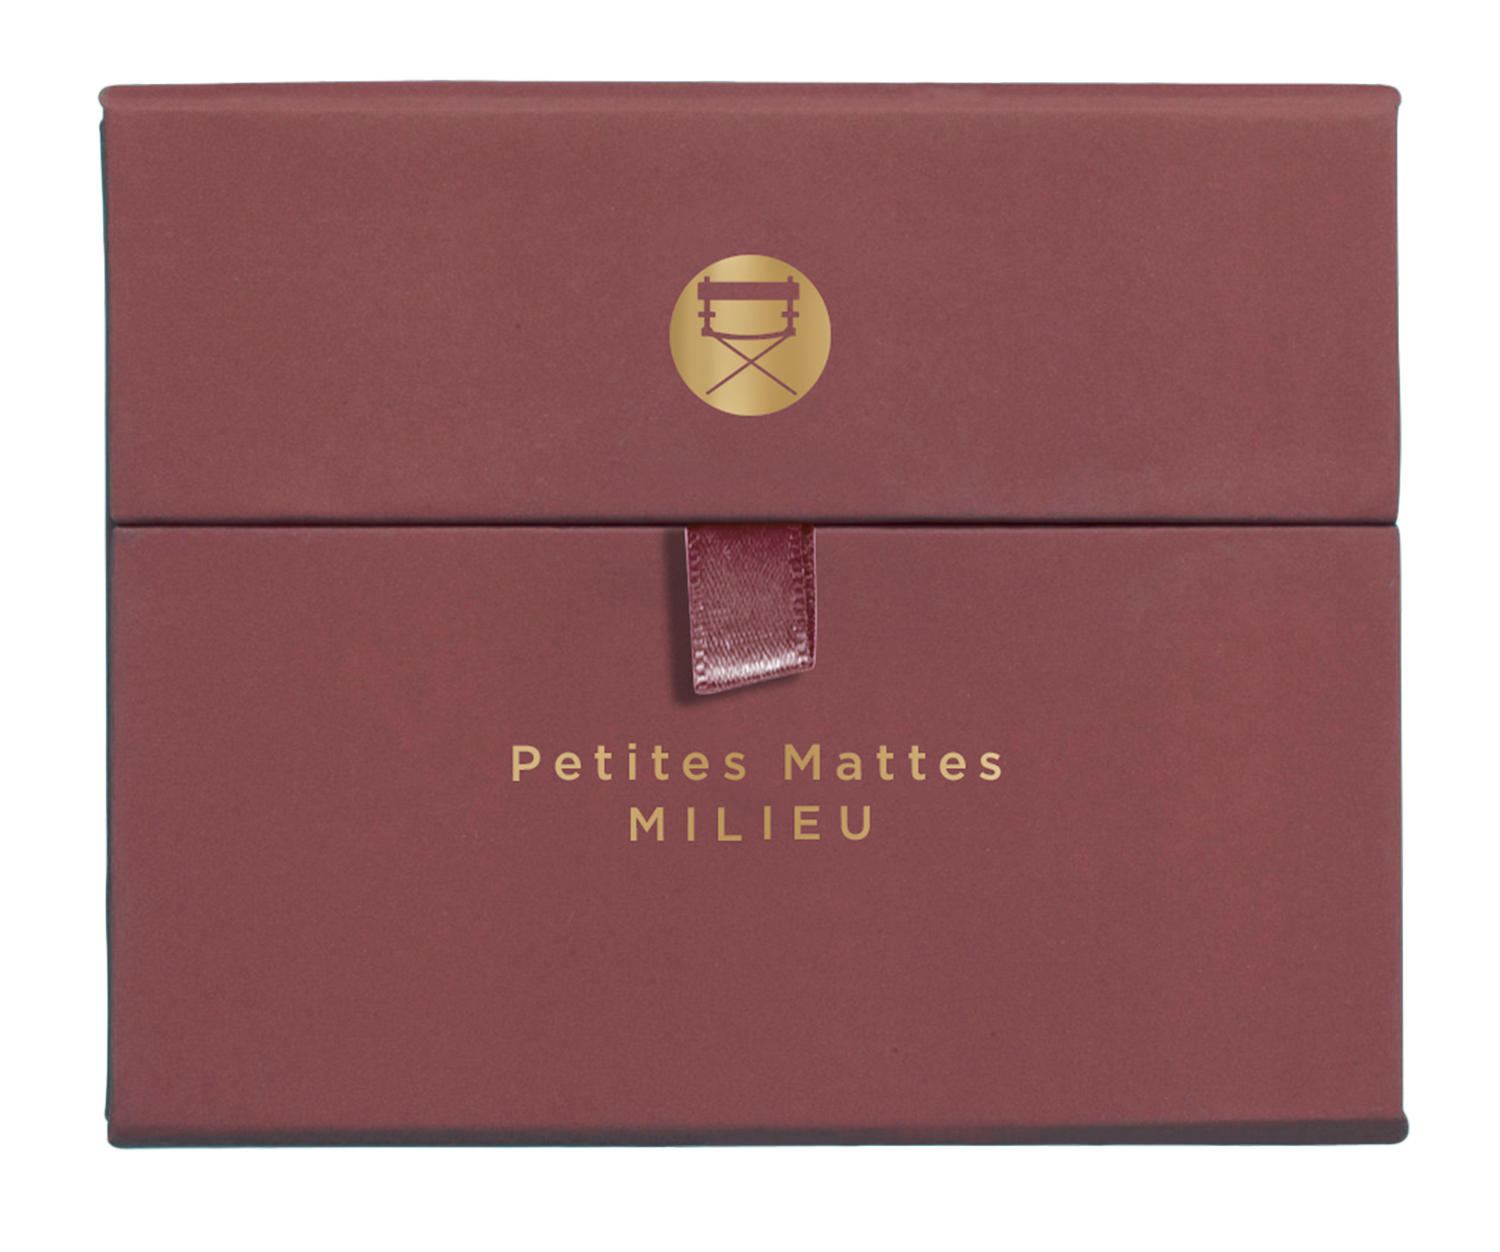 Viseart Paris Mattes Milieu Eyeshadow Palette Case